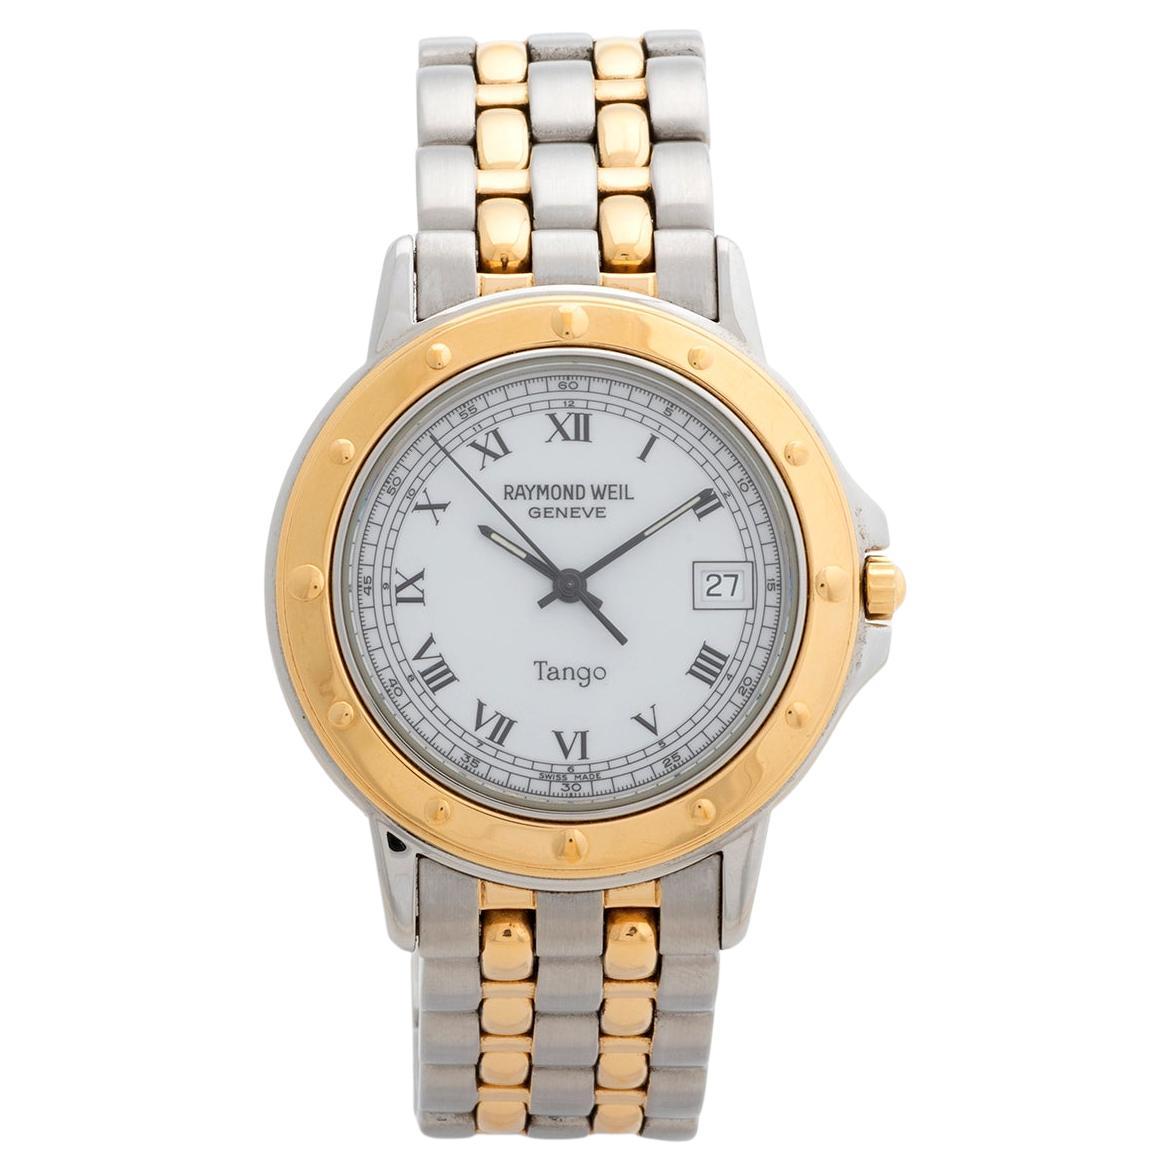 Raymond Weil Tango Quartz Wristwatch with date, reference 5560. Circa 2000